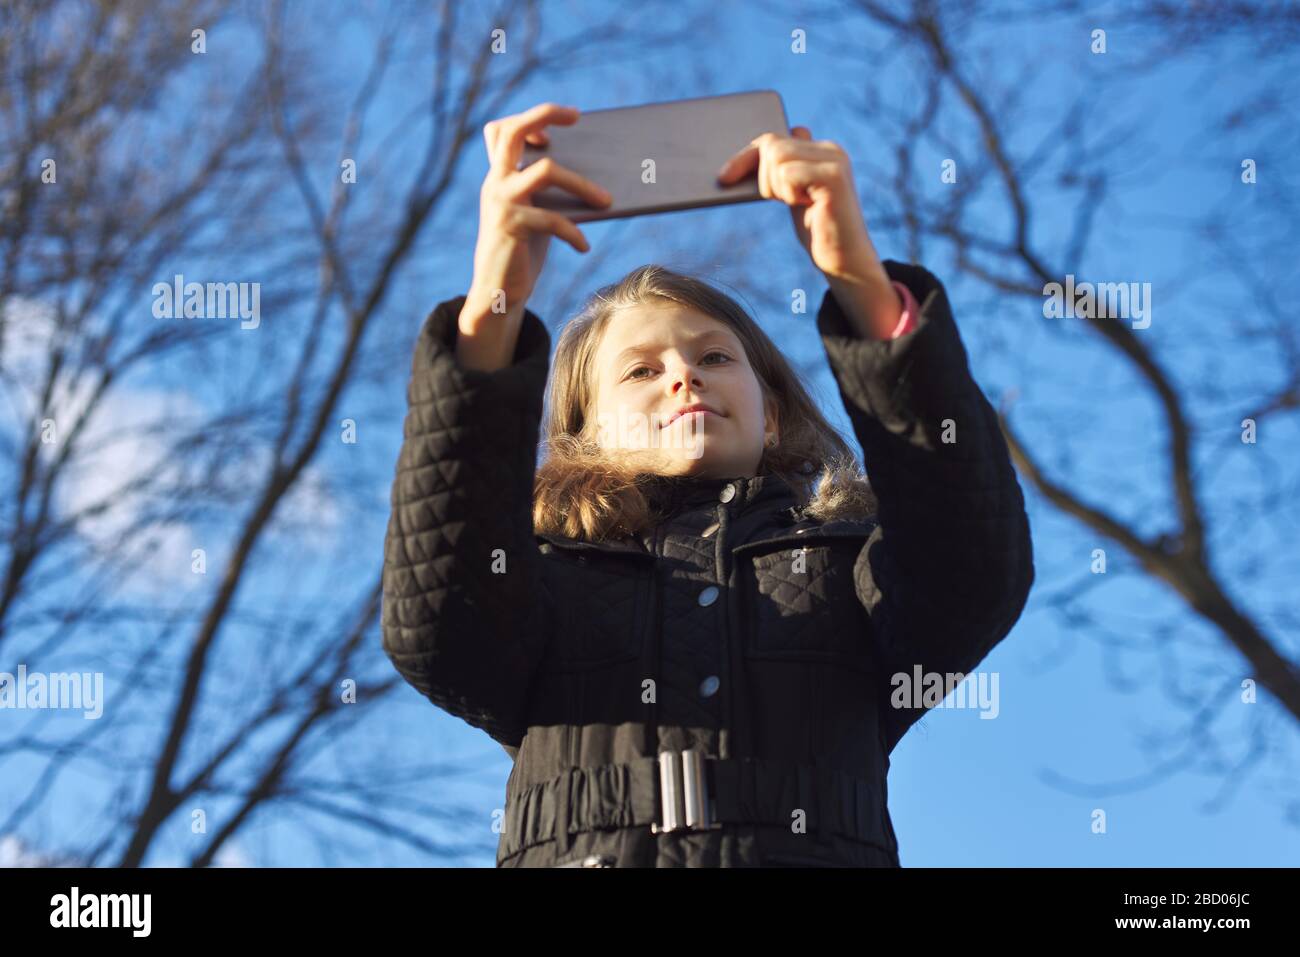 Portrait extérieur fille enfant de 8, 9 ans avec smartphone Banque D'Images